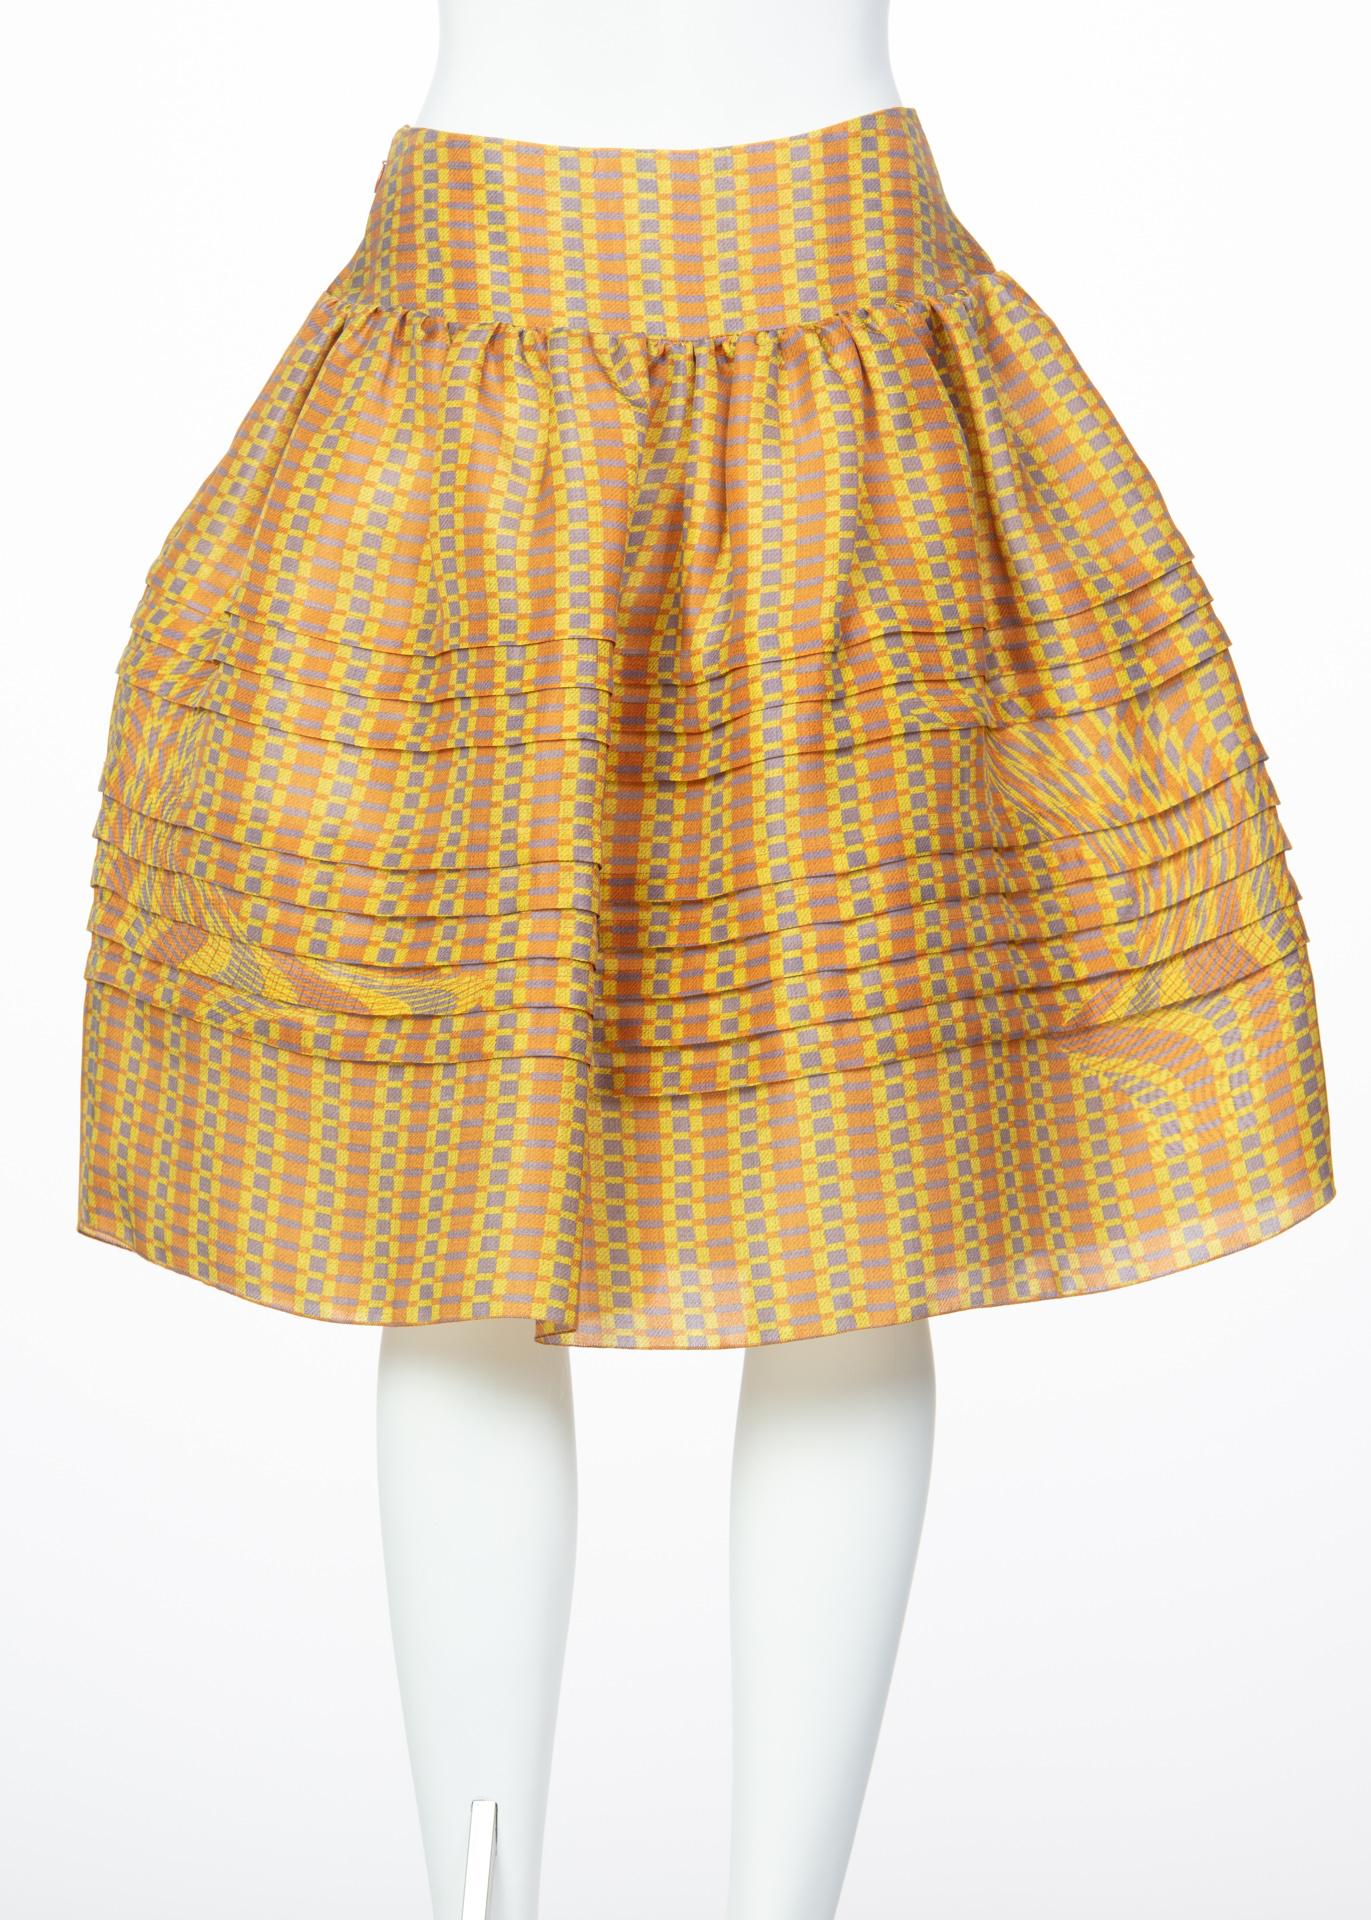 Women's 2008 Prada Fairy Runway Yellow Printed Silk Organza Skirt